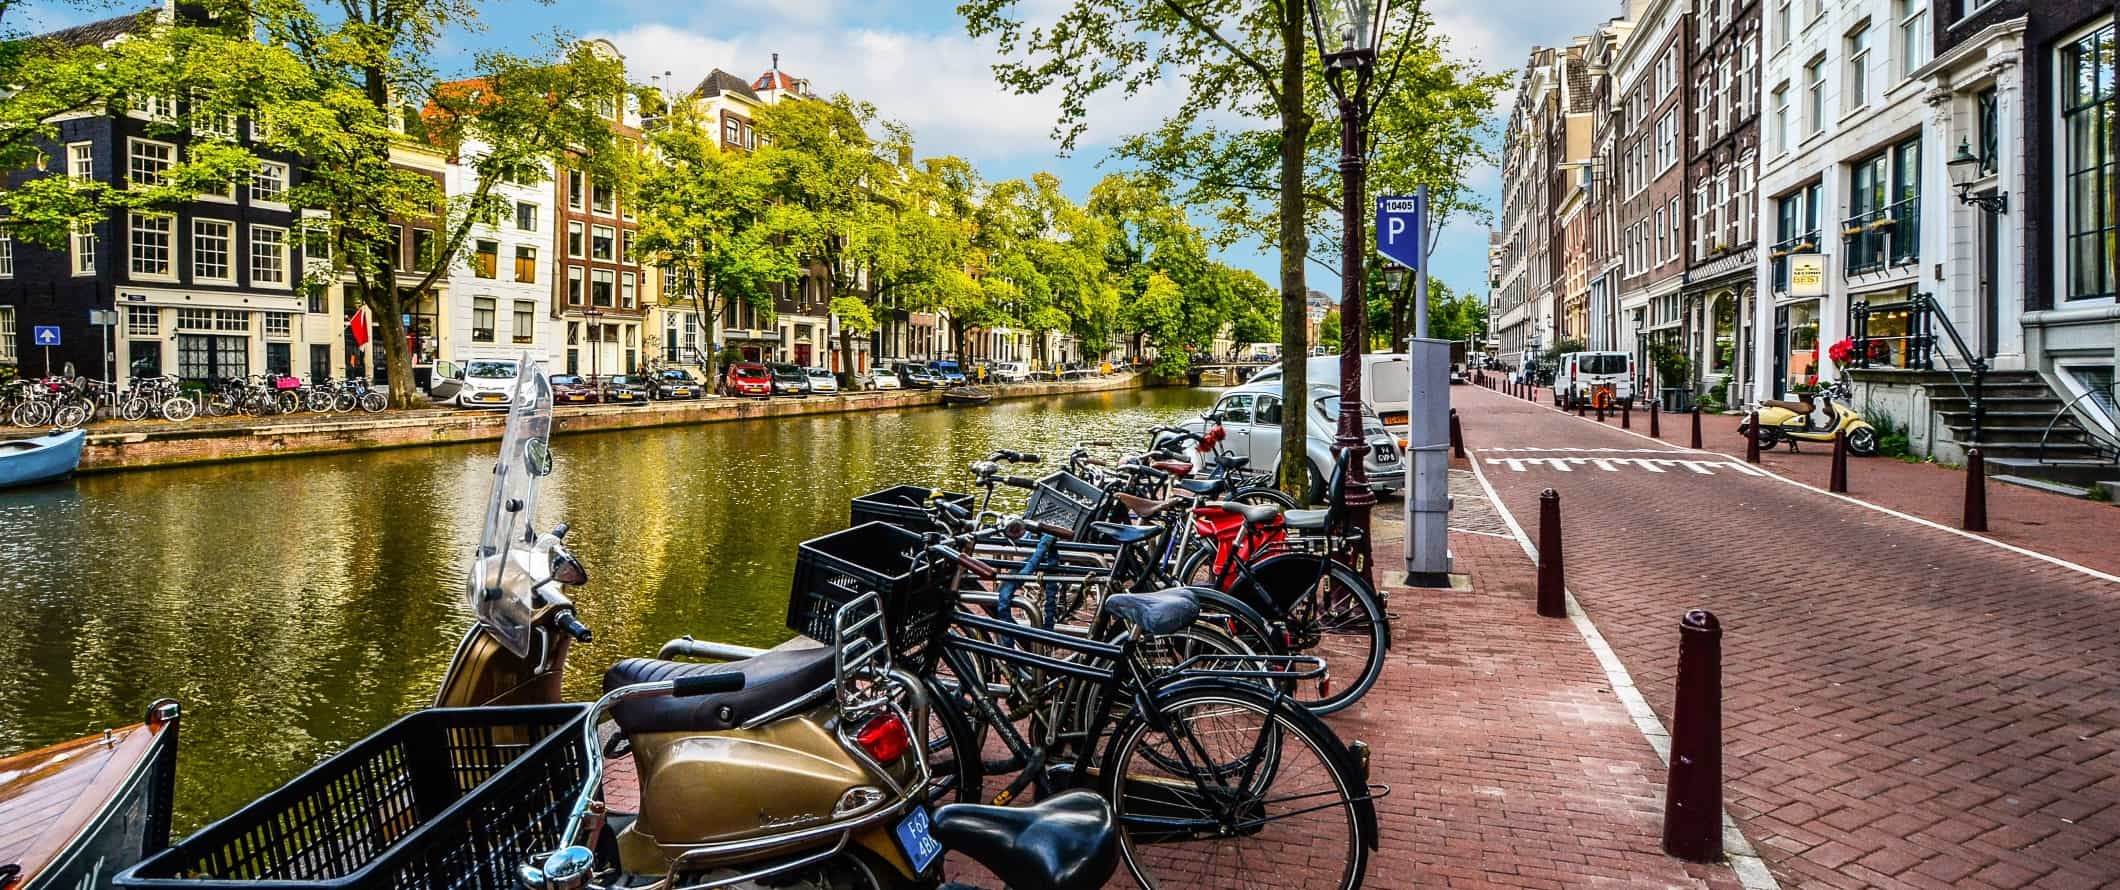 O acúmulo de bicicletas trancadas ao longo do canal em Amsterdã, na Holanda.